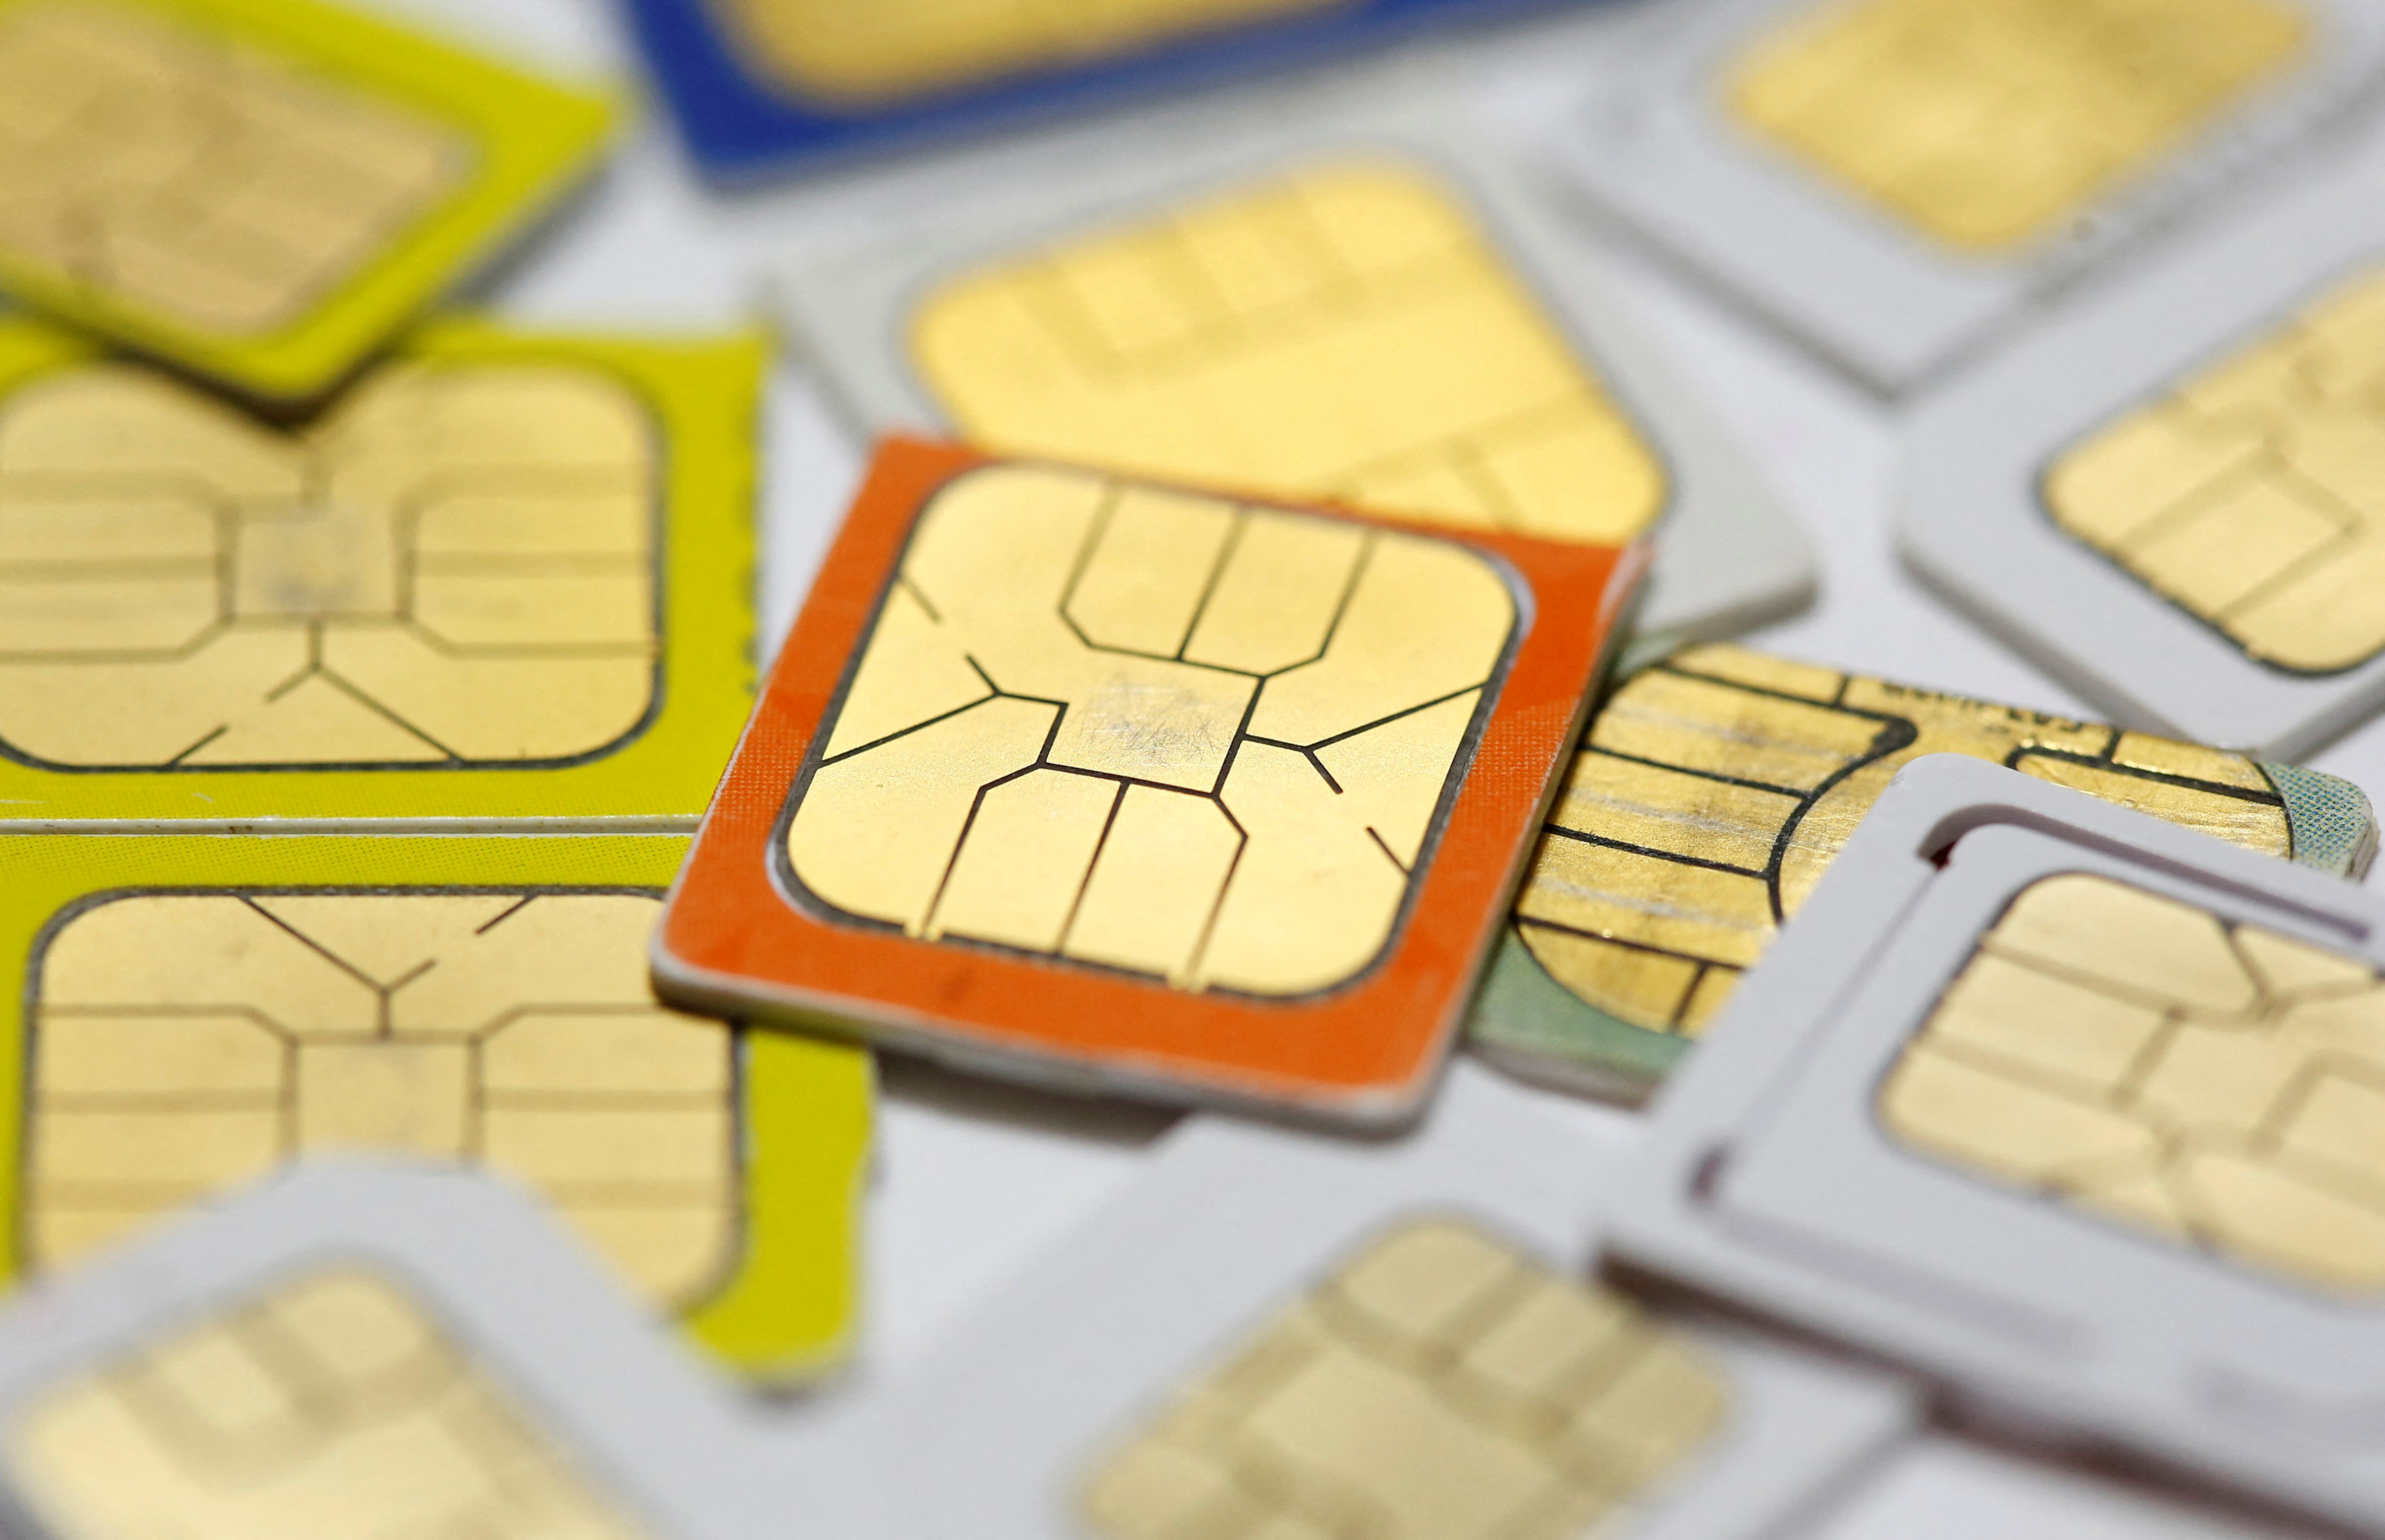 Qué es la eSIM y por qué está reemplazando la SIM Card de los celulares